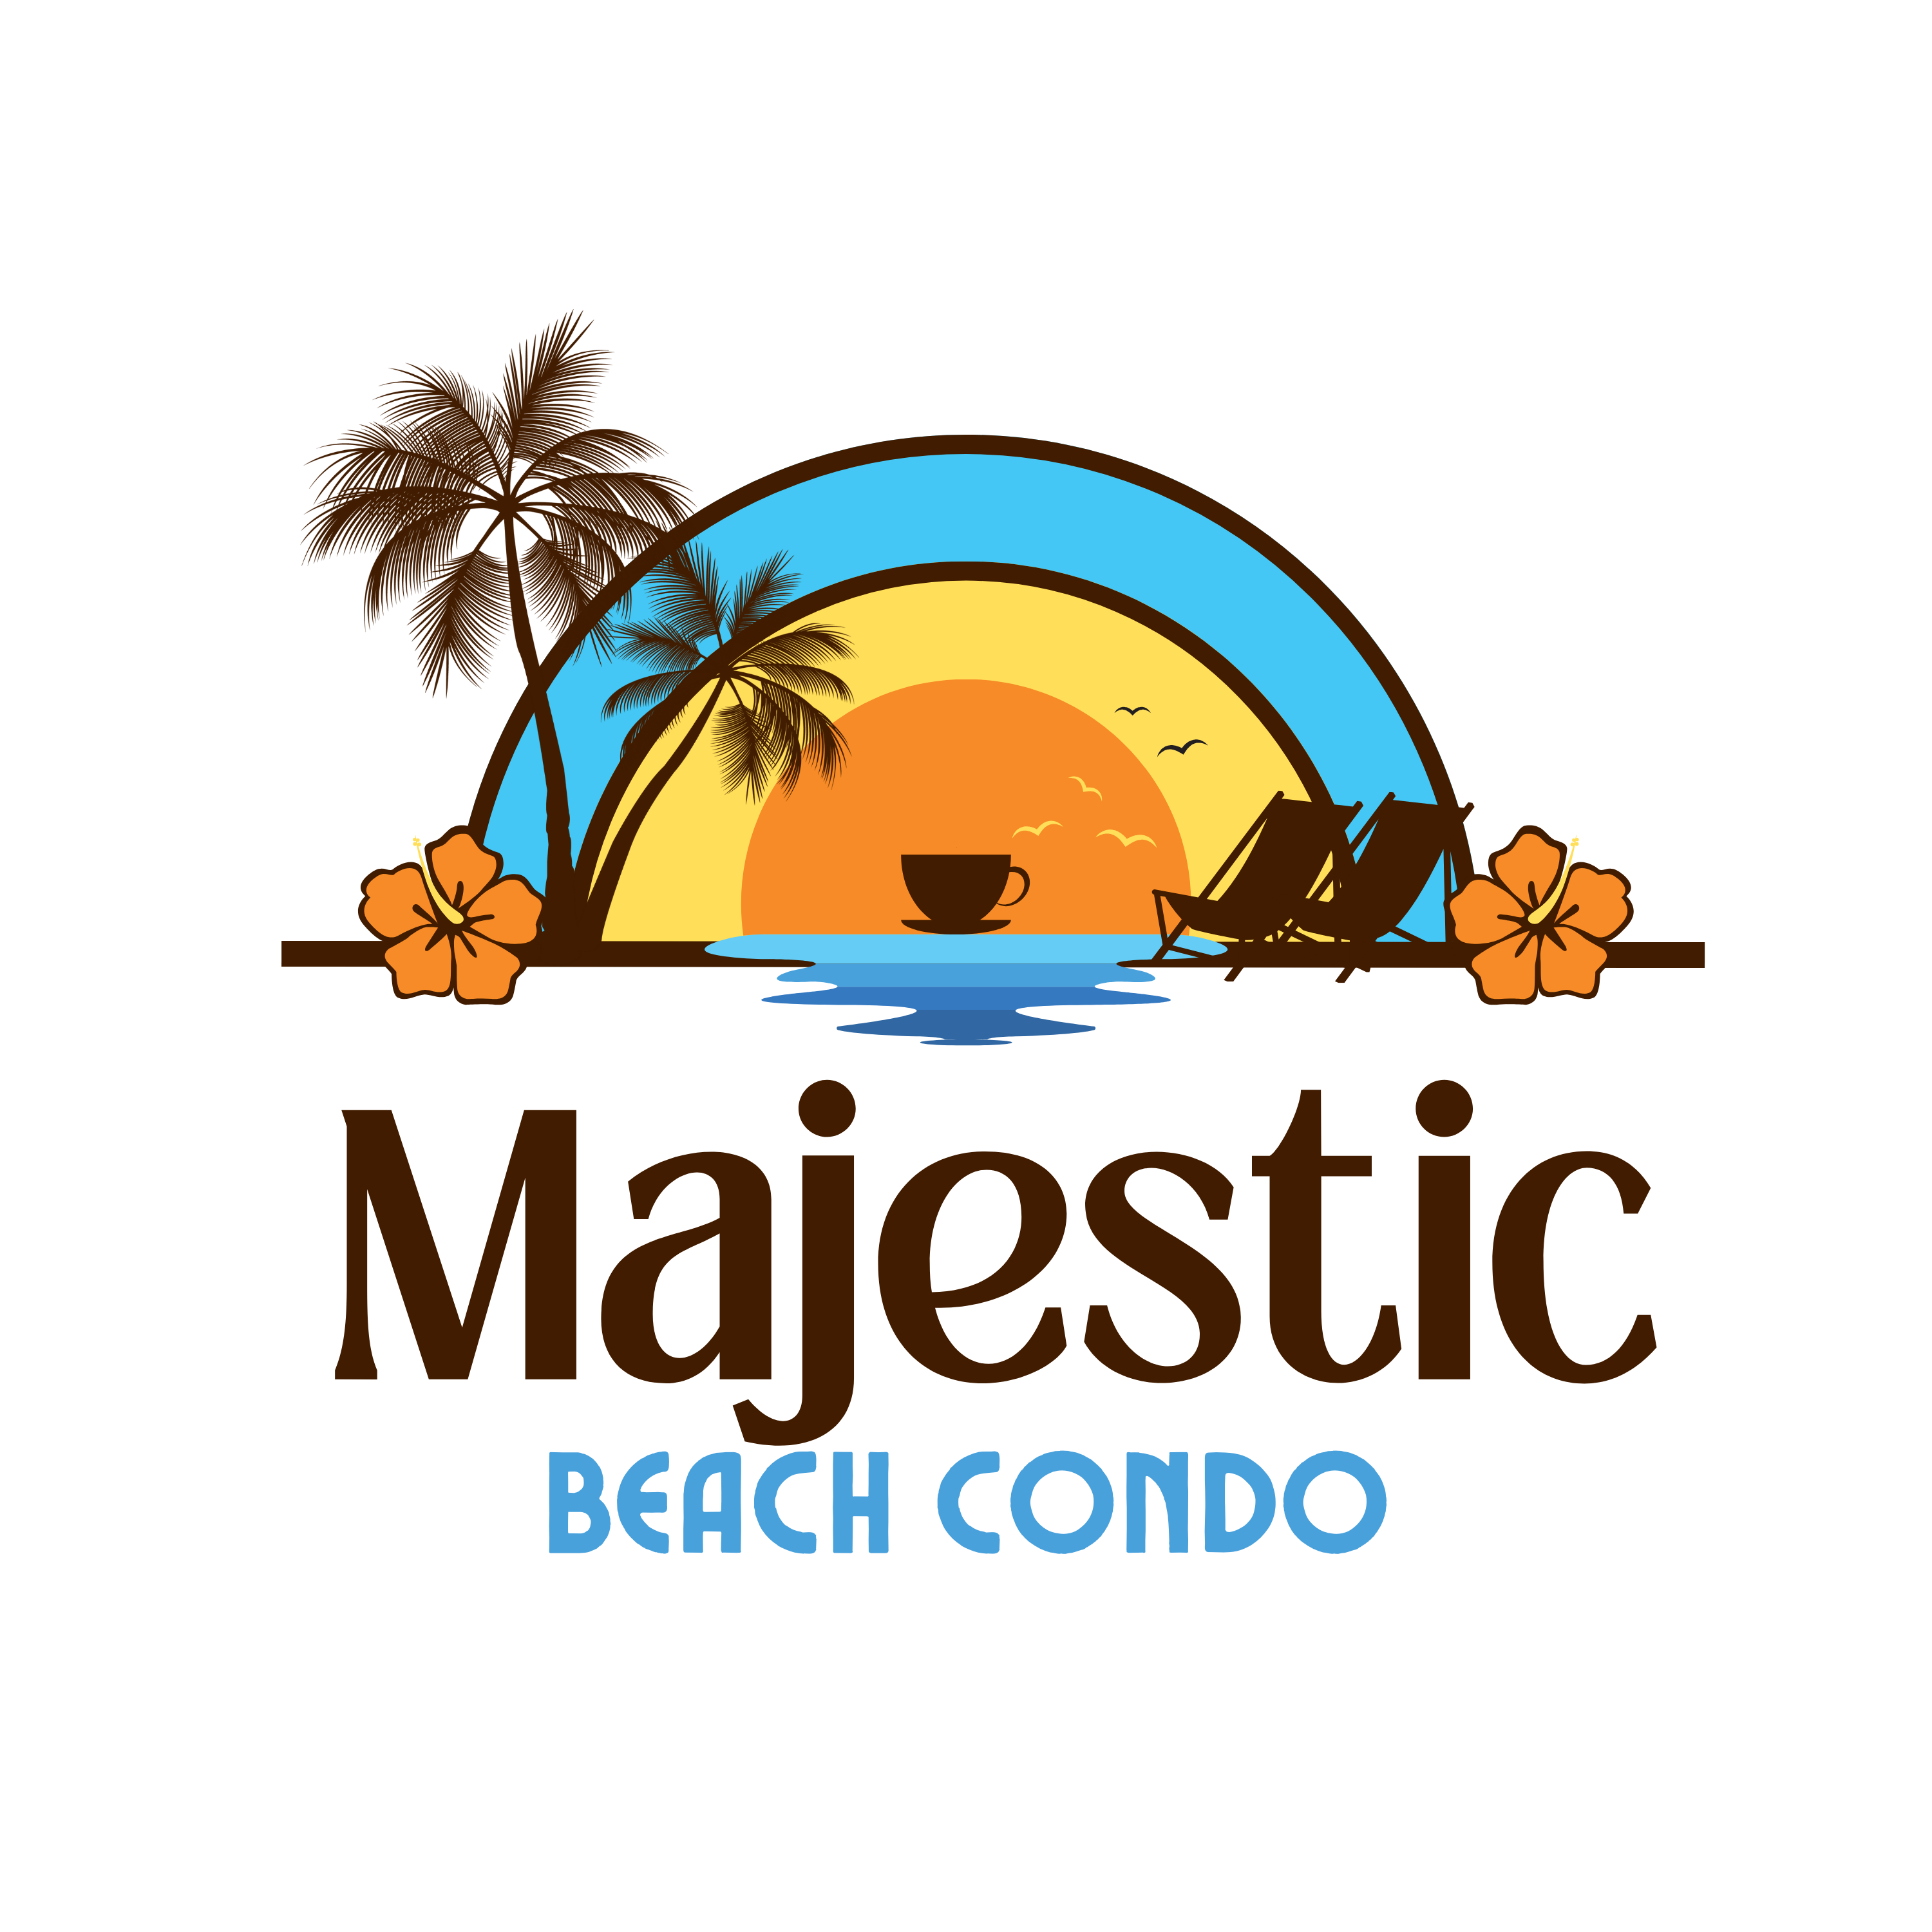 Majestic Beach Condo